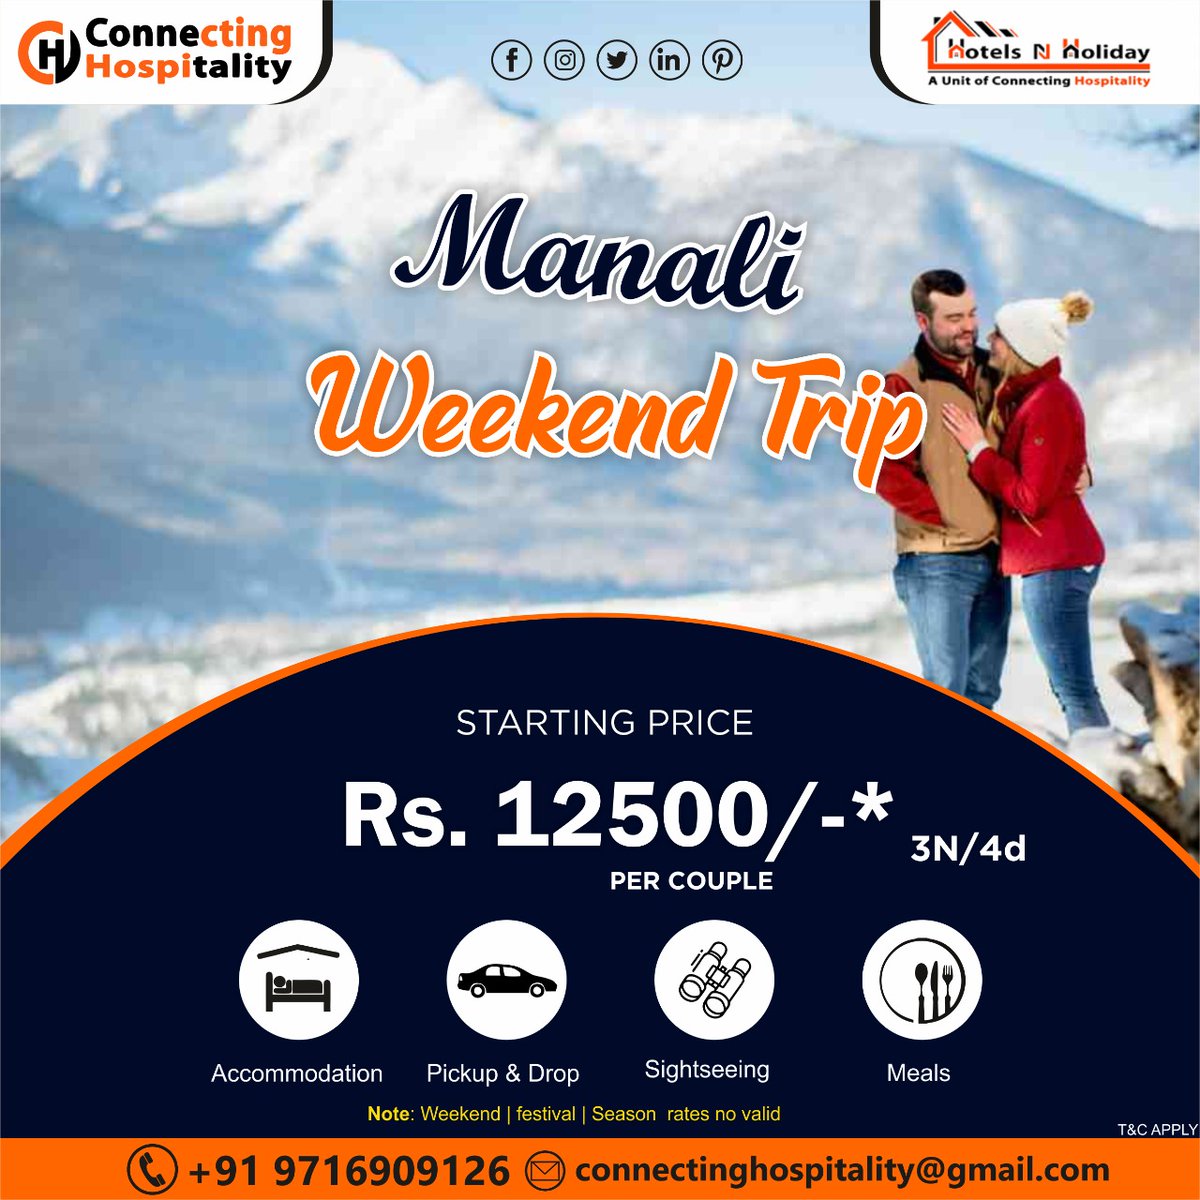 Manali Weekend Trip 
.
#himachal #manaliweekendtrip #accommodations #pickupdrop #sightseeing #meals #manalitourpackage #manalitourism #manalitour #manali #GroupTourPackage #incredibleindia